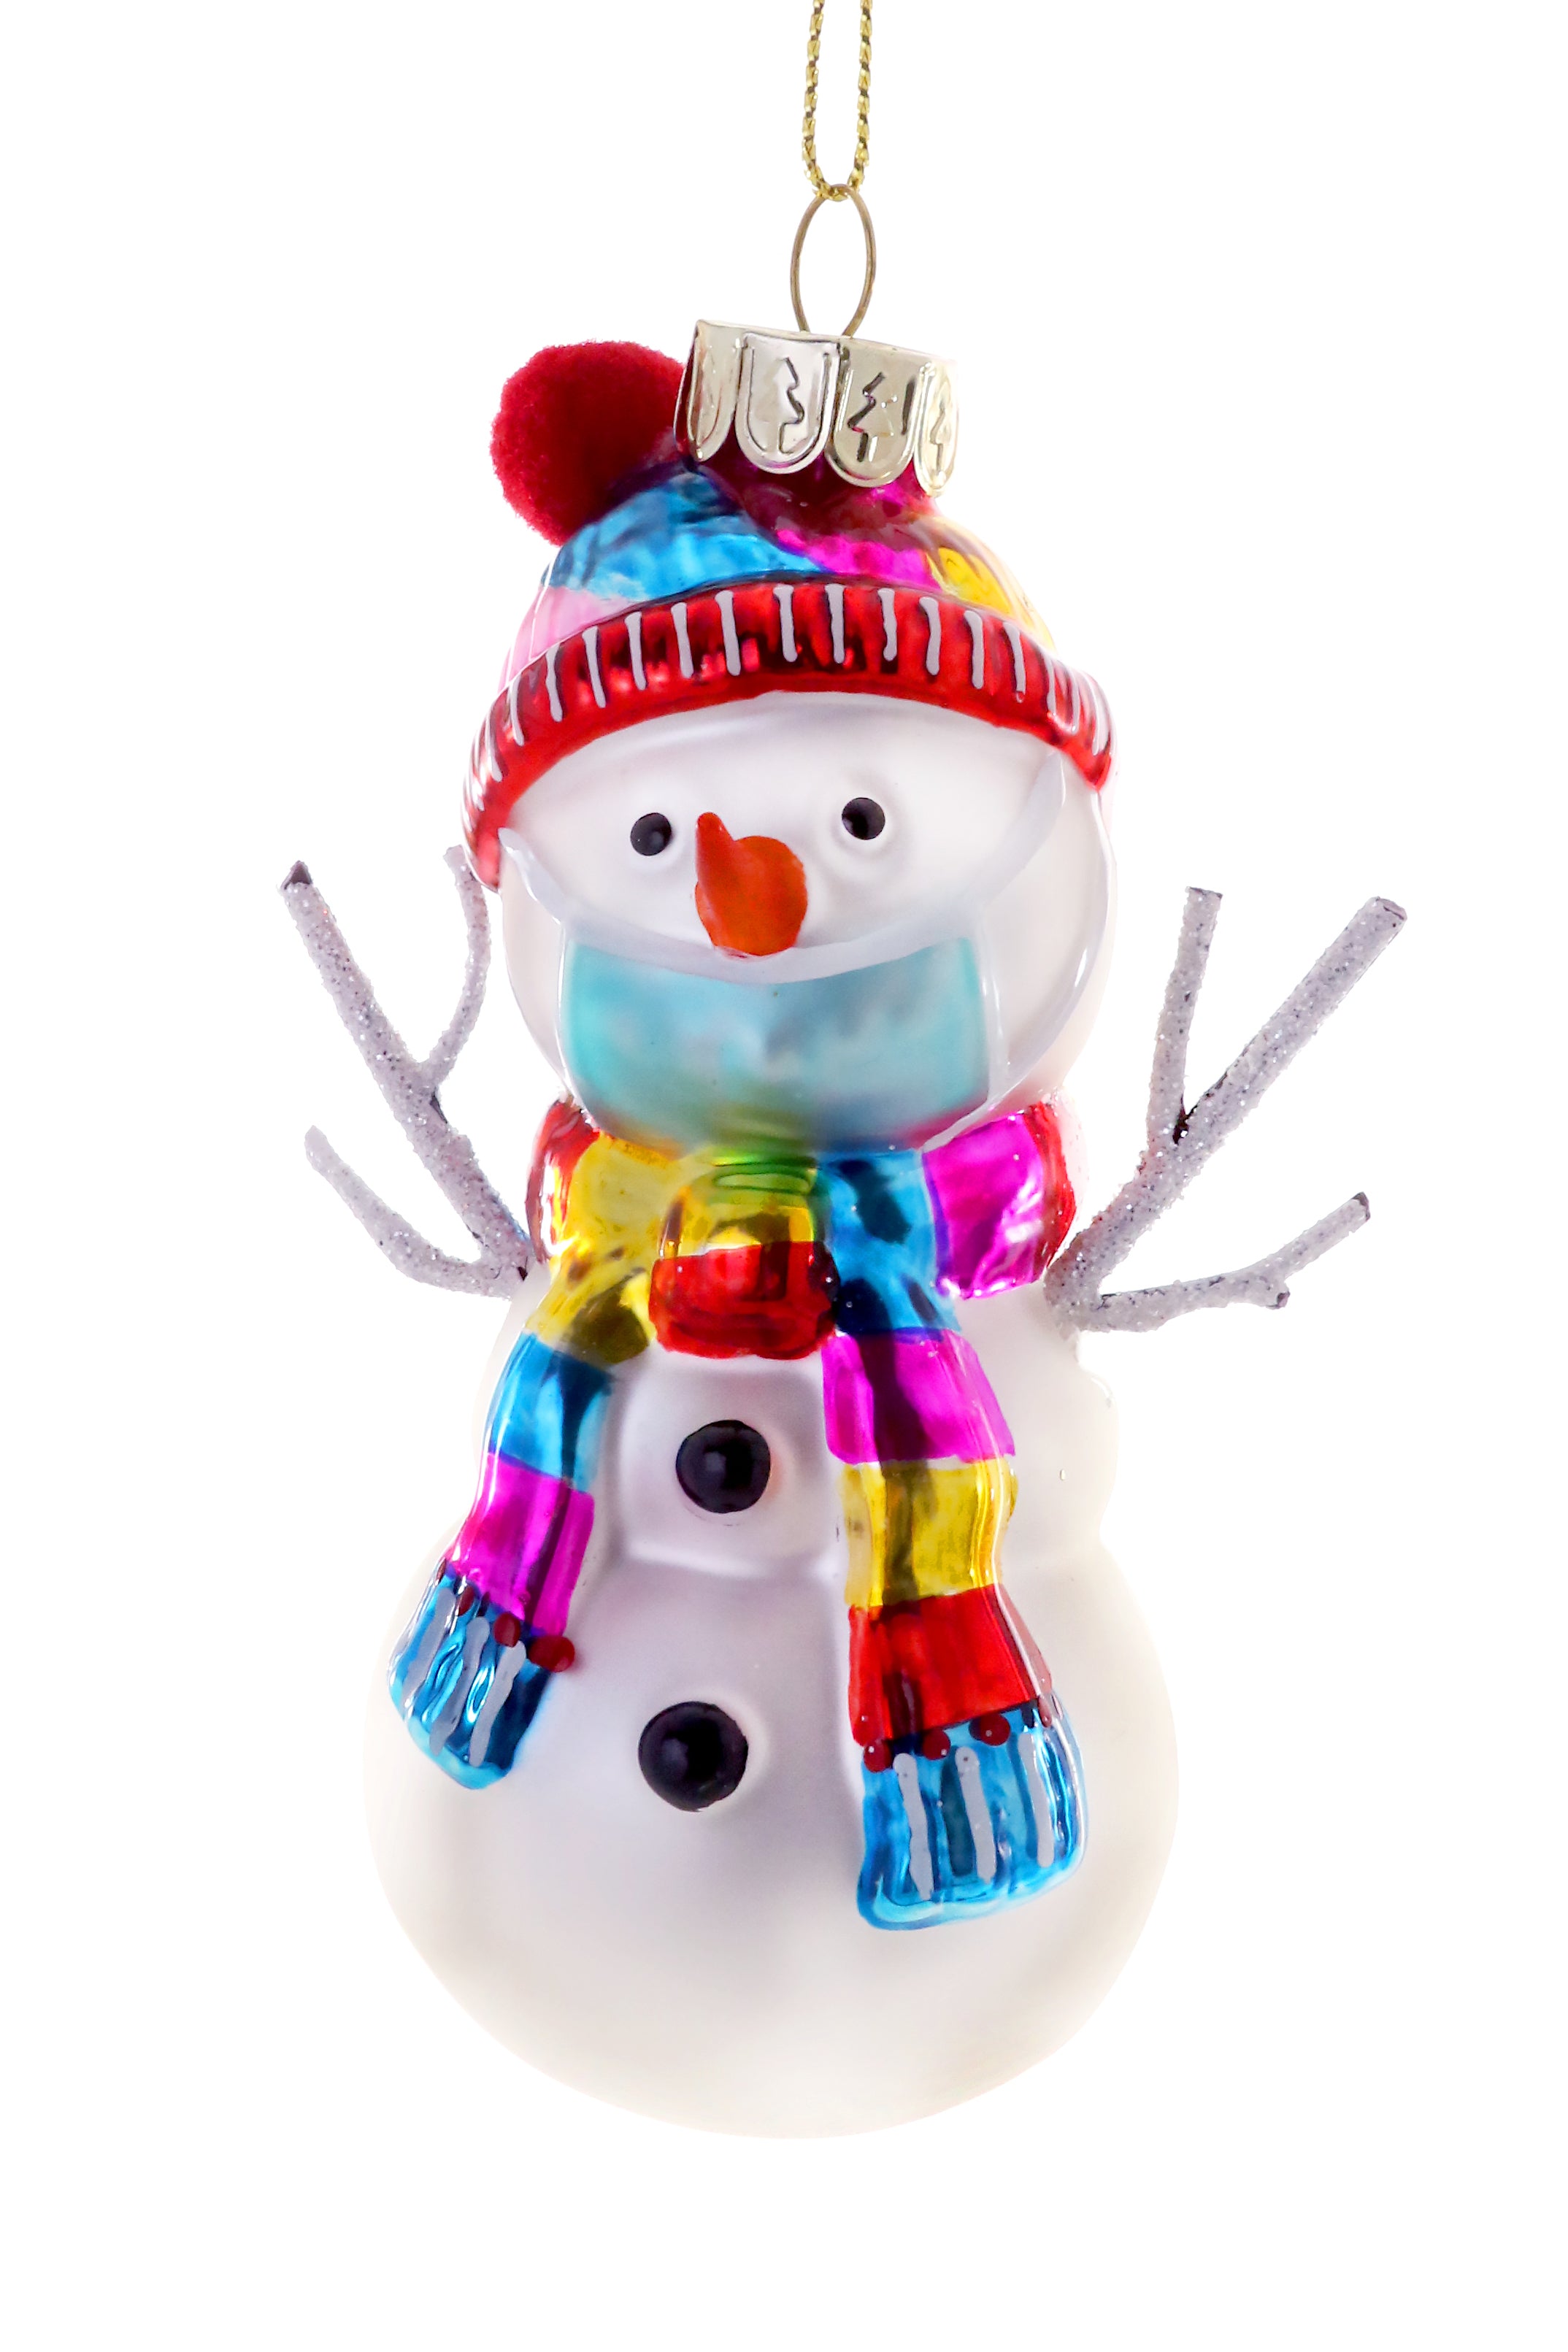 Social Distancing Snowman Ornament